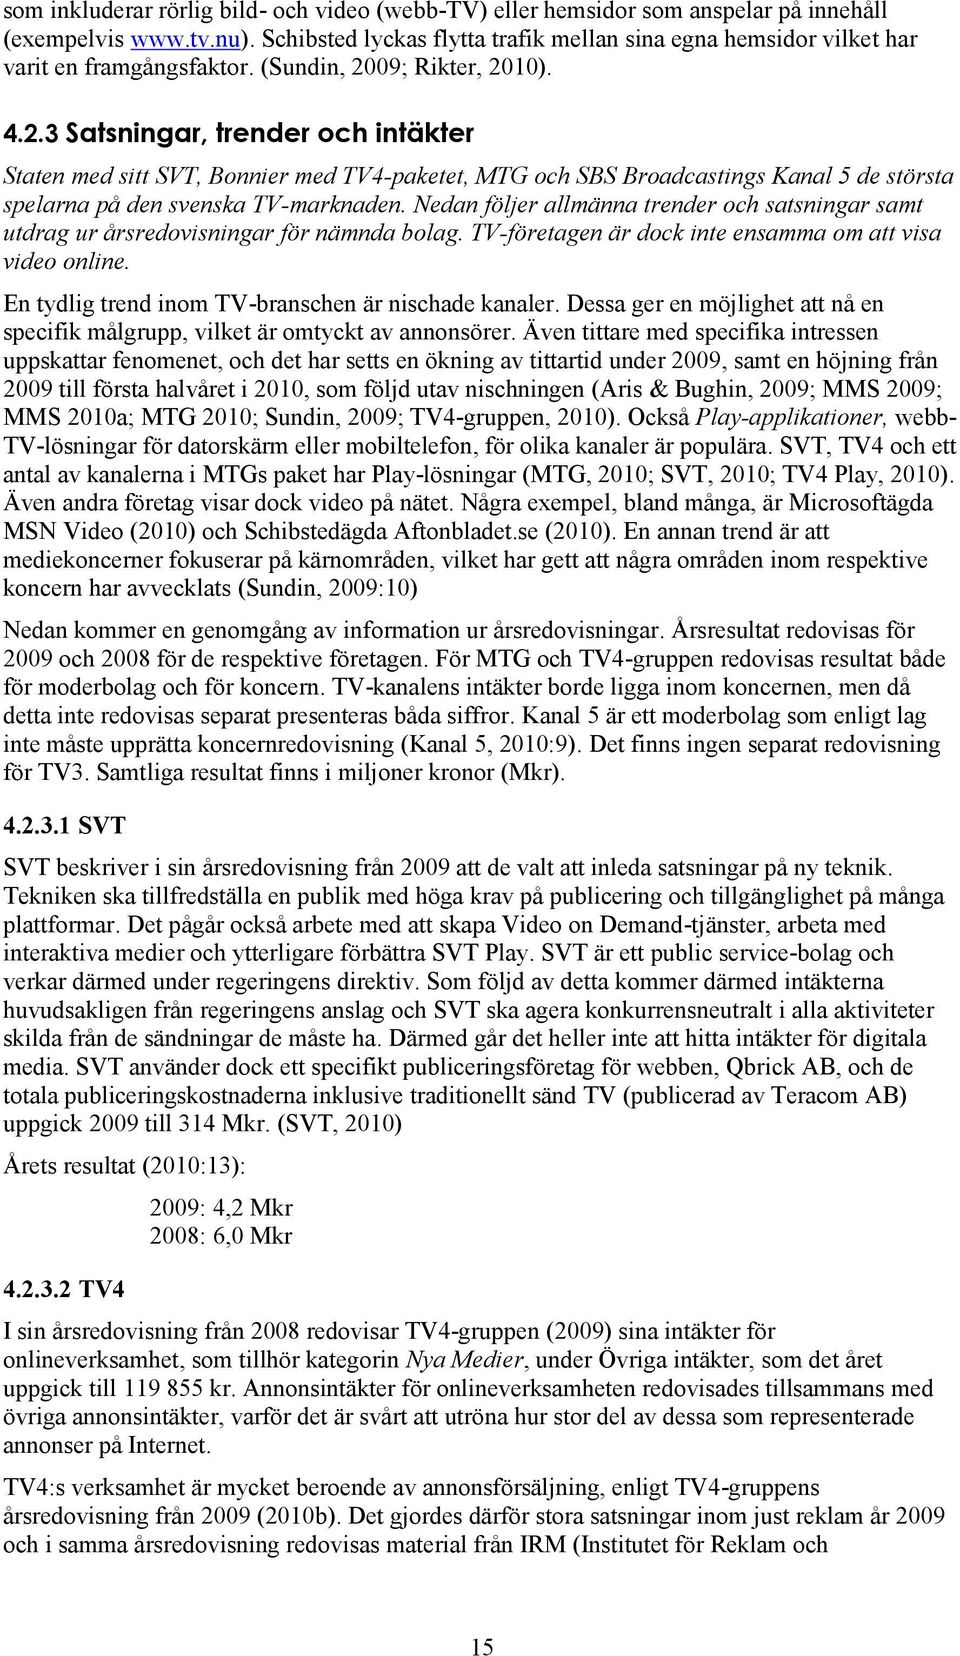 09; Rikter, 2010). 4.2.3 Satsningar, trender och intäkter Staten med sitt SVT, Bonnier med TV4-paketet, MTG och SBS Broadcastings Kanal 5 de största spelarna på den svenska TV-marknaden.